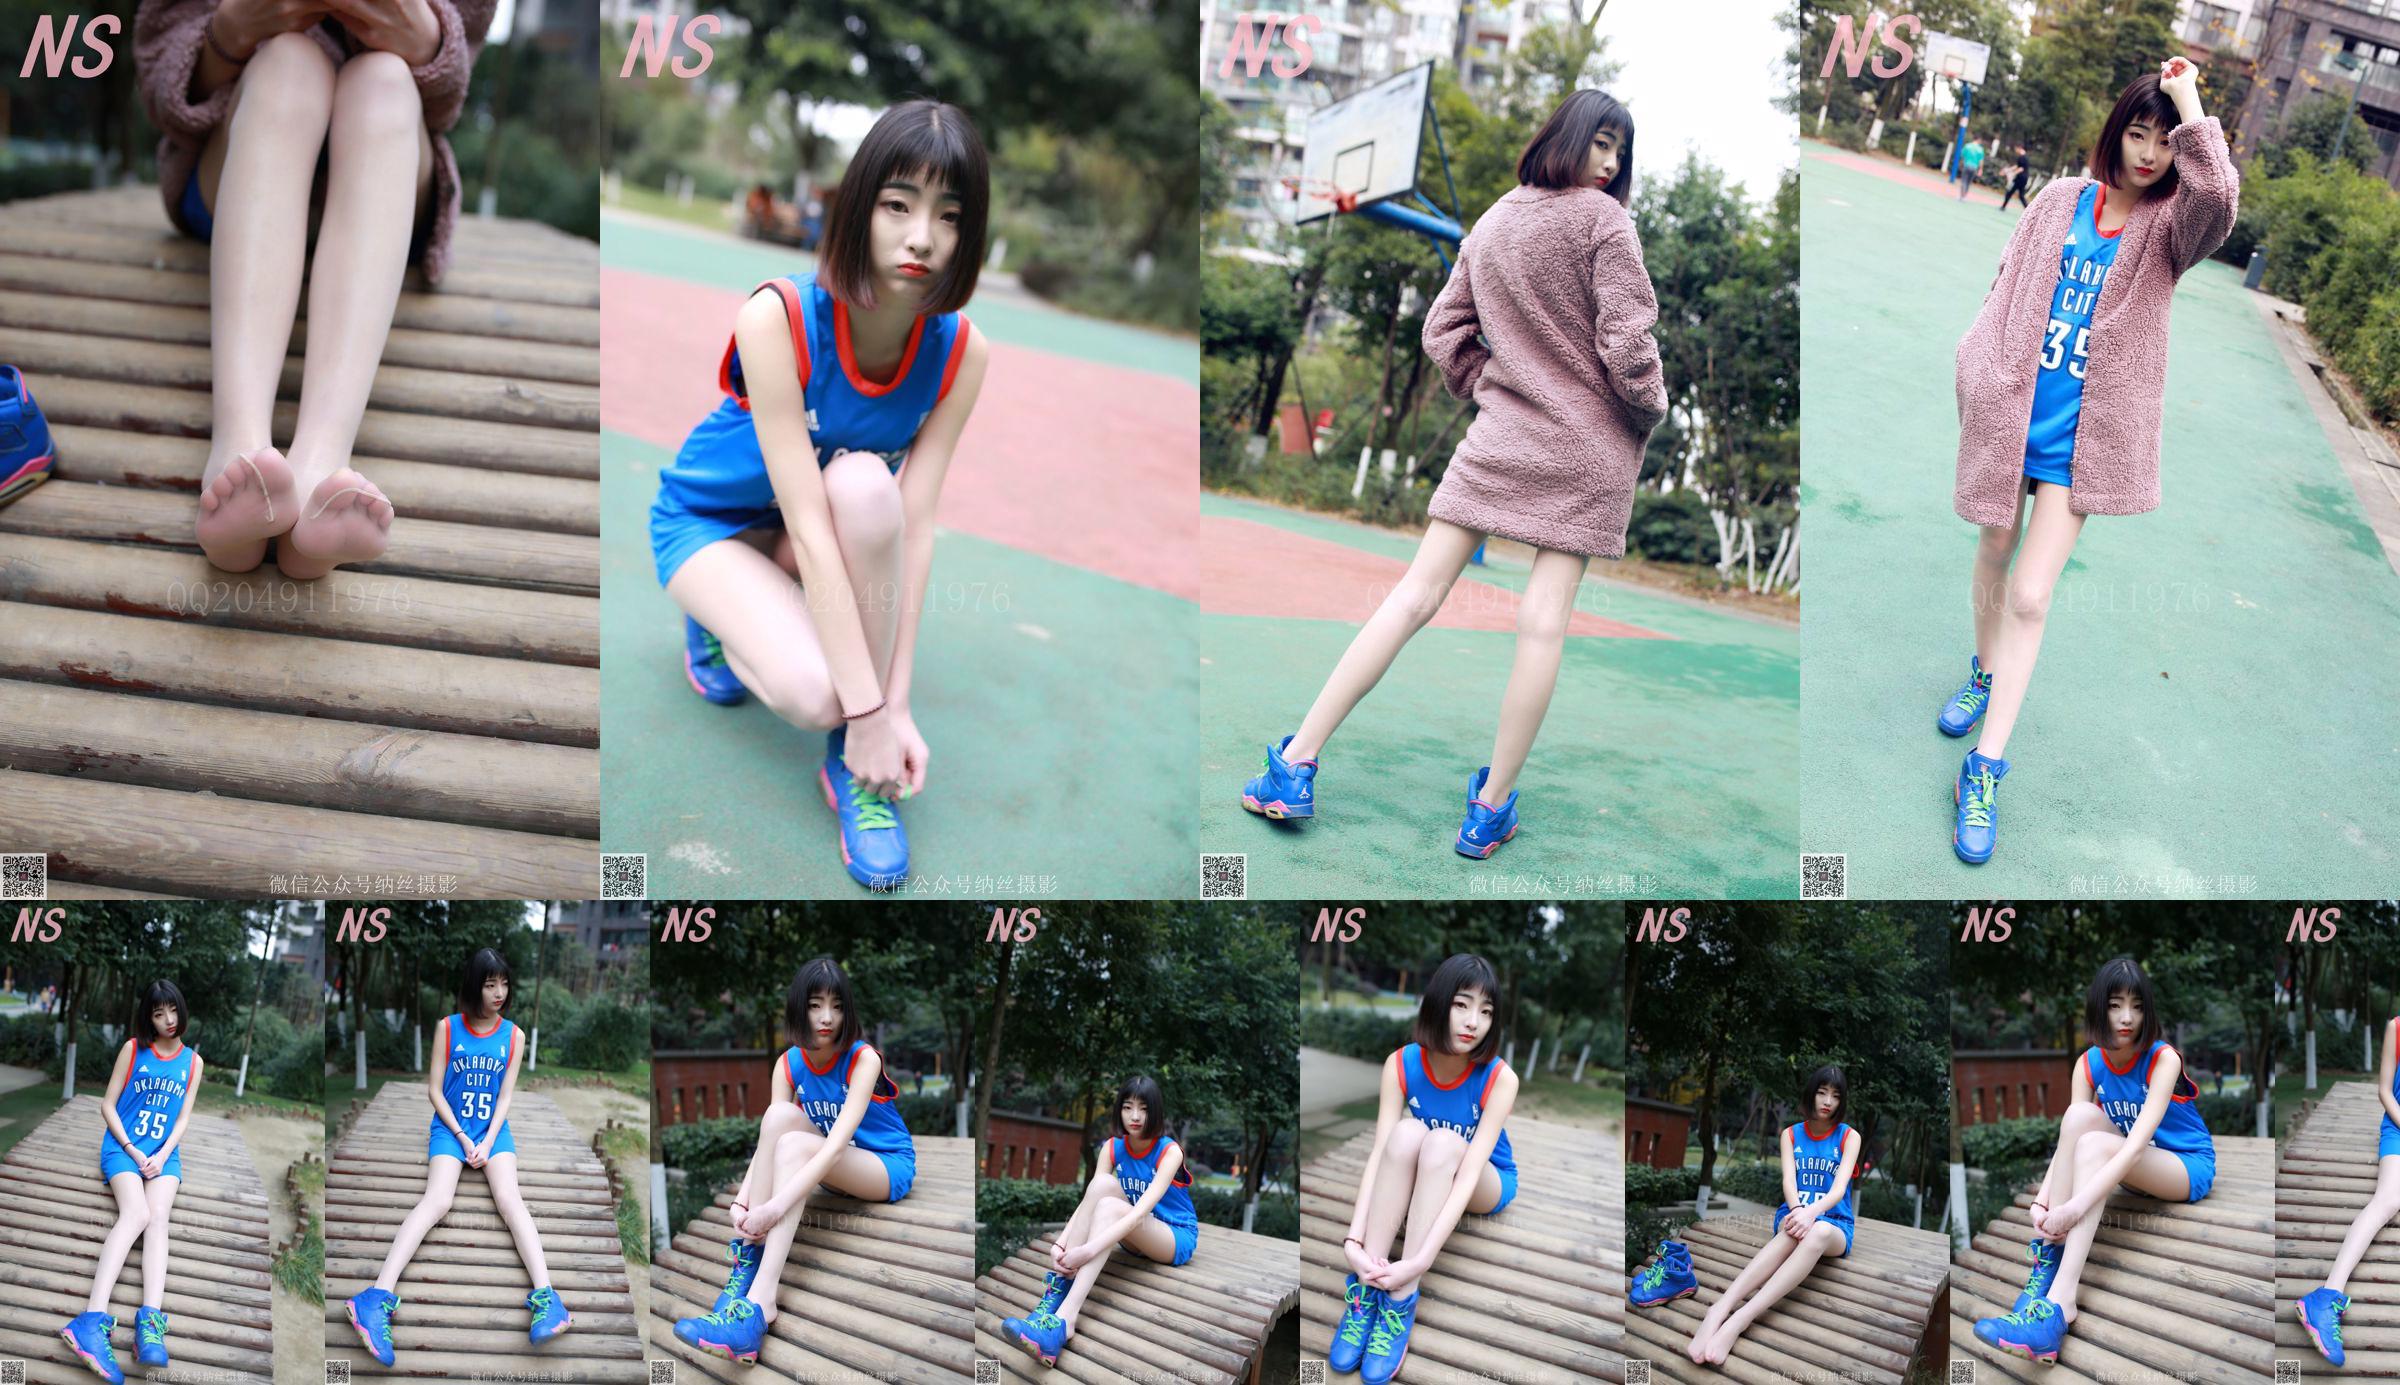 Chen Yujie "Basketball Girl" [Nasi Photography] N ° 107 No.f54758 Page 1